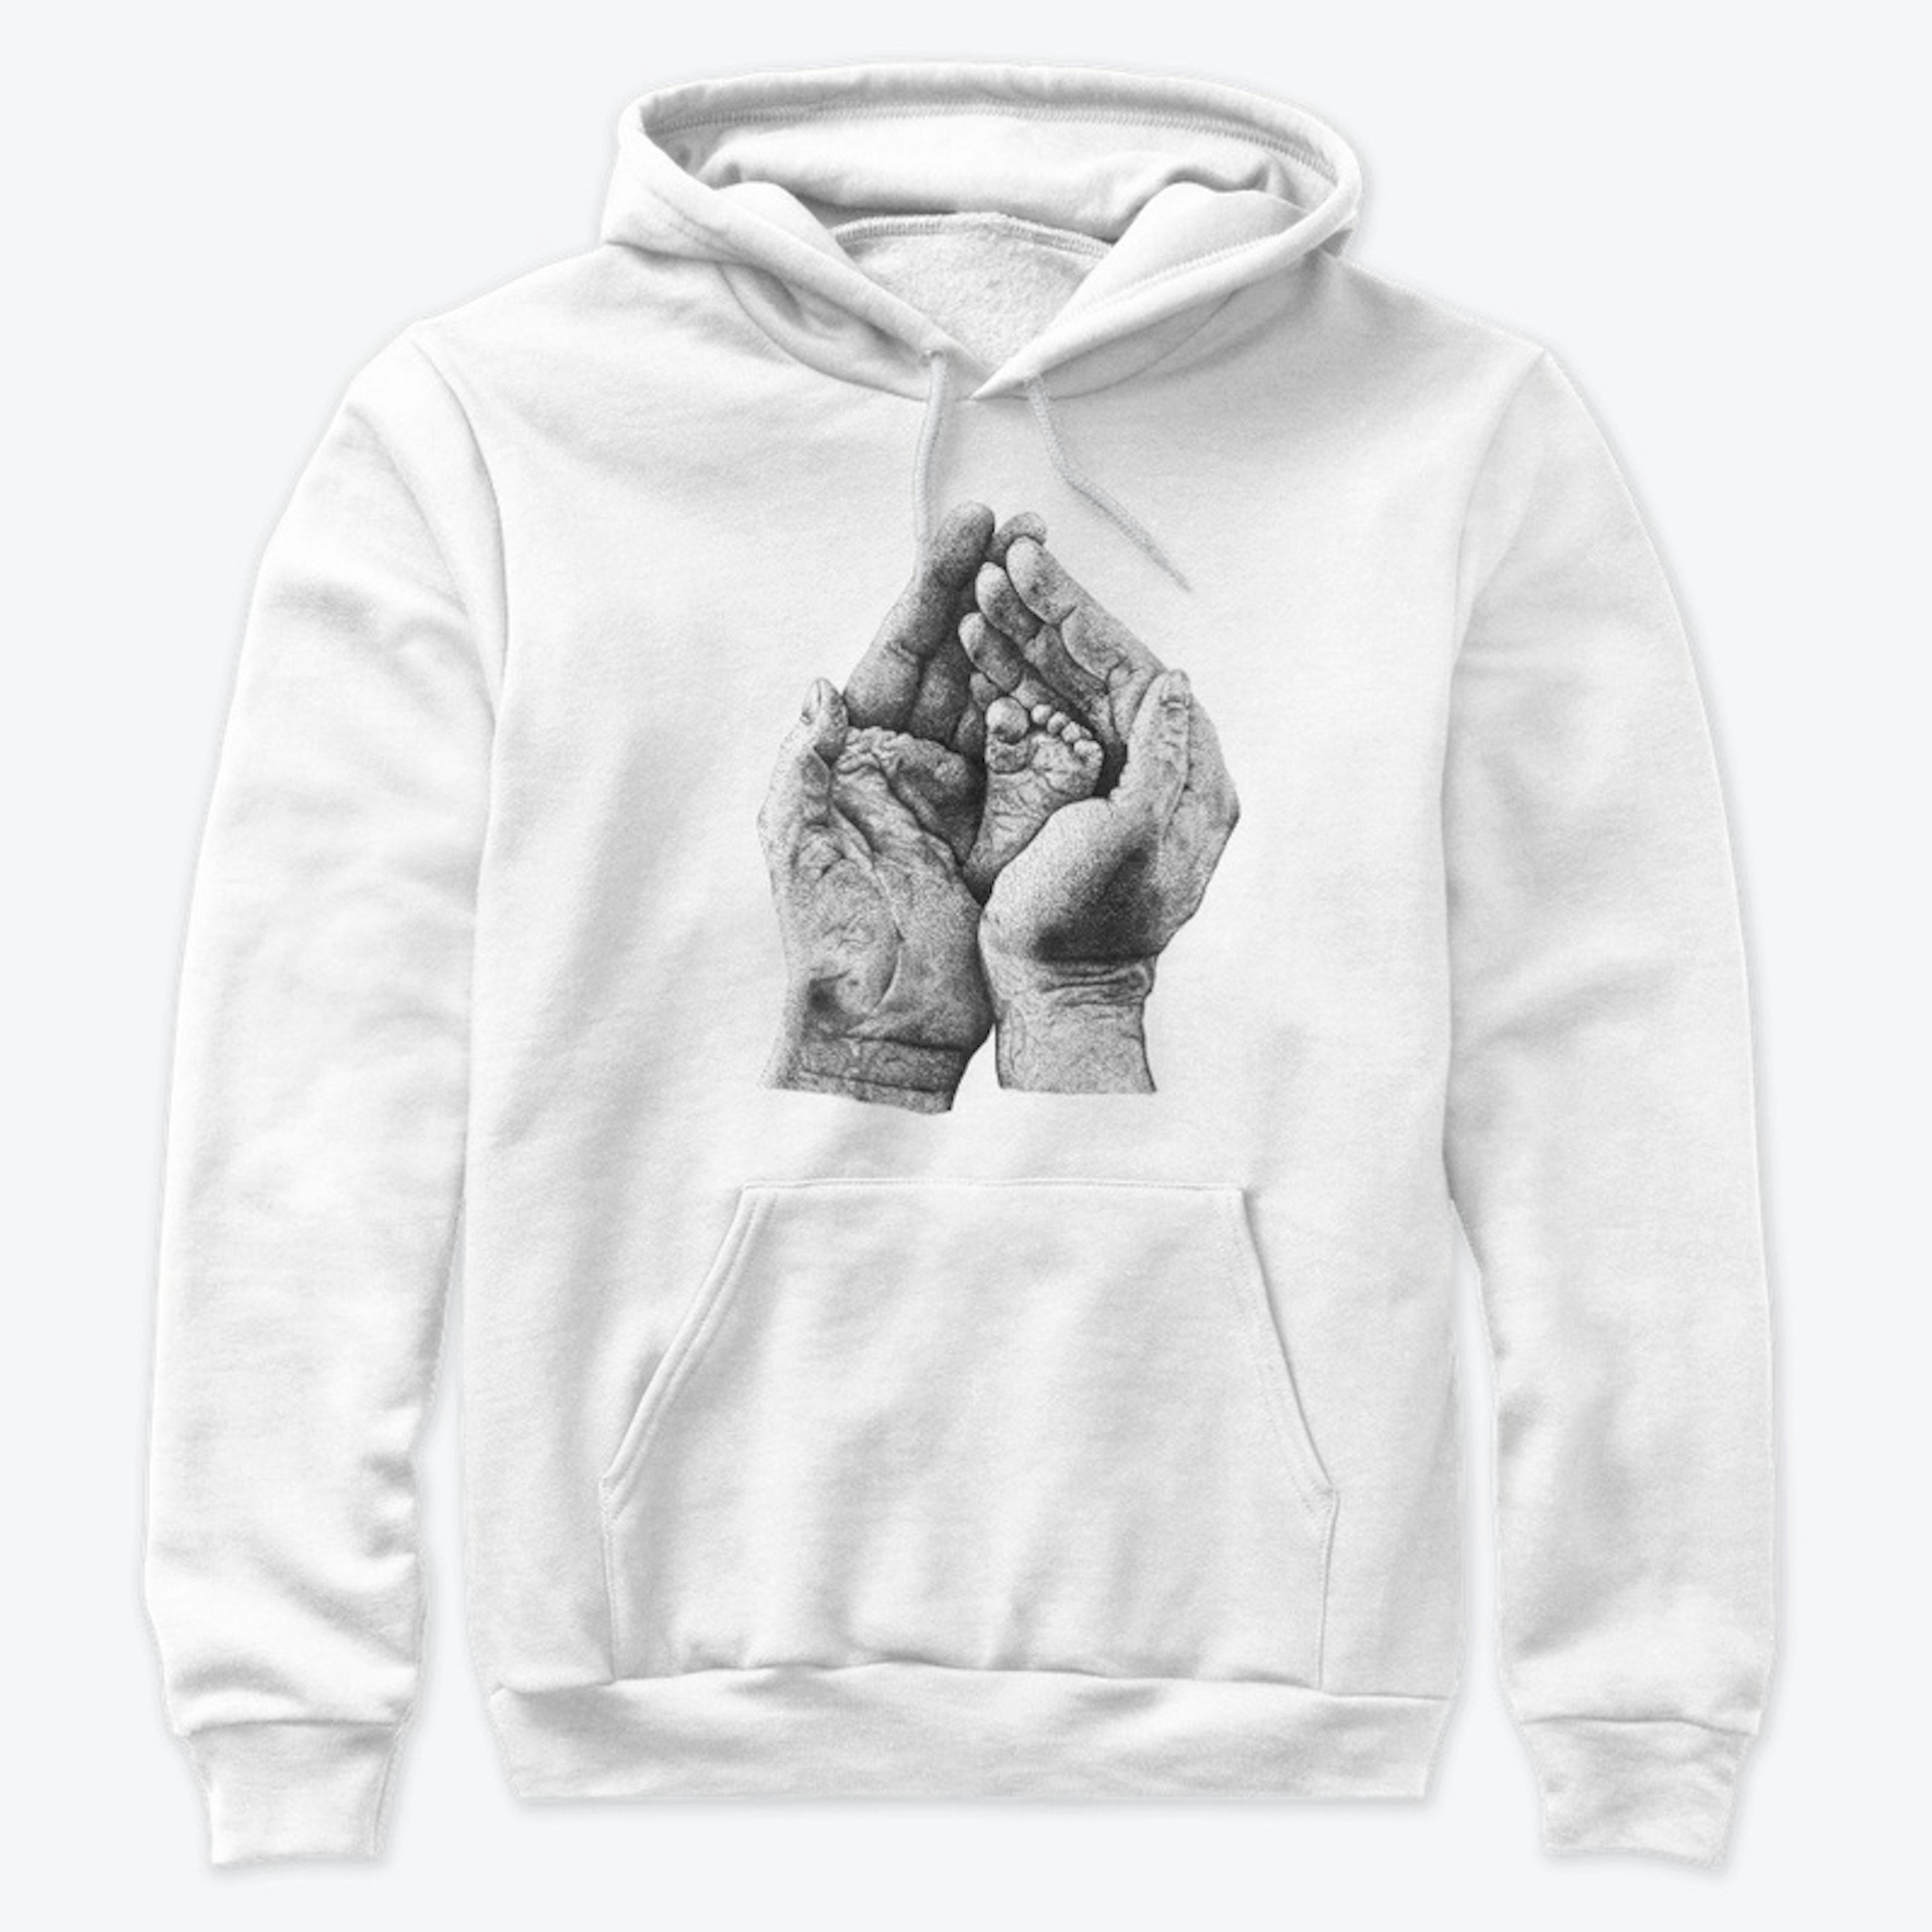 Artistic hoodie